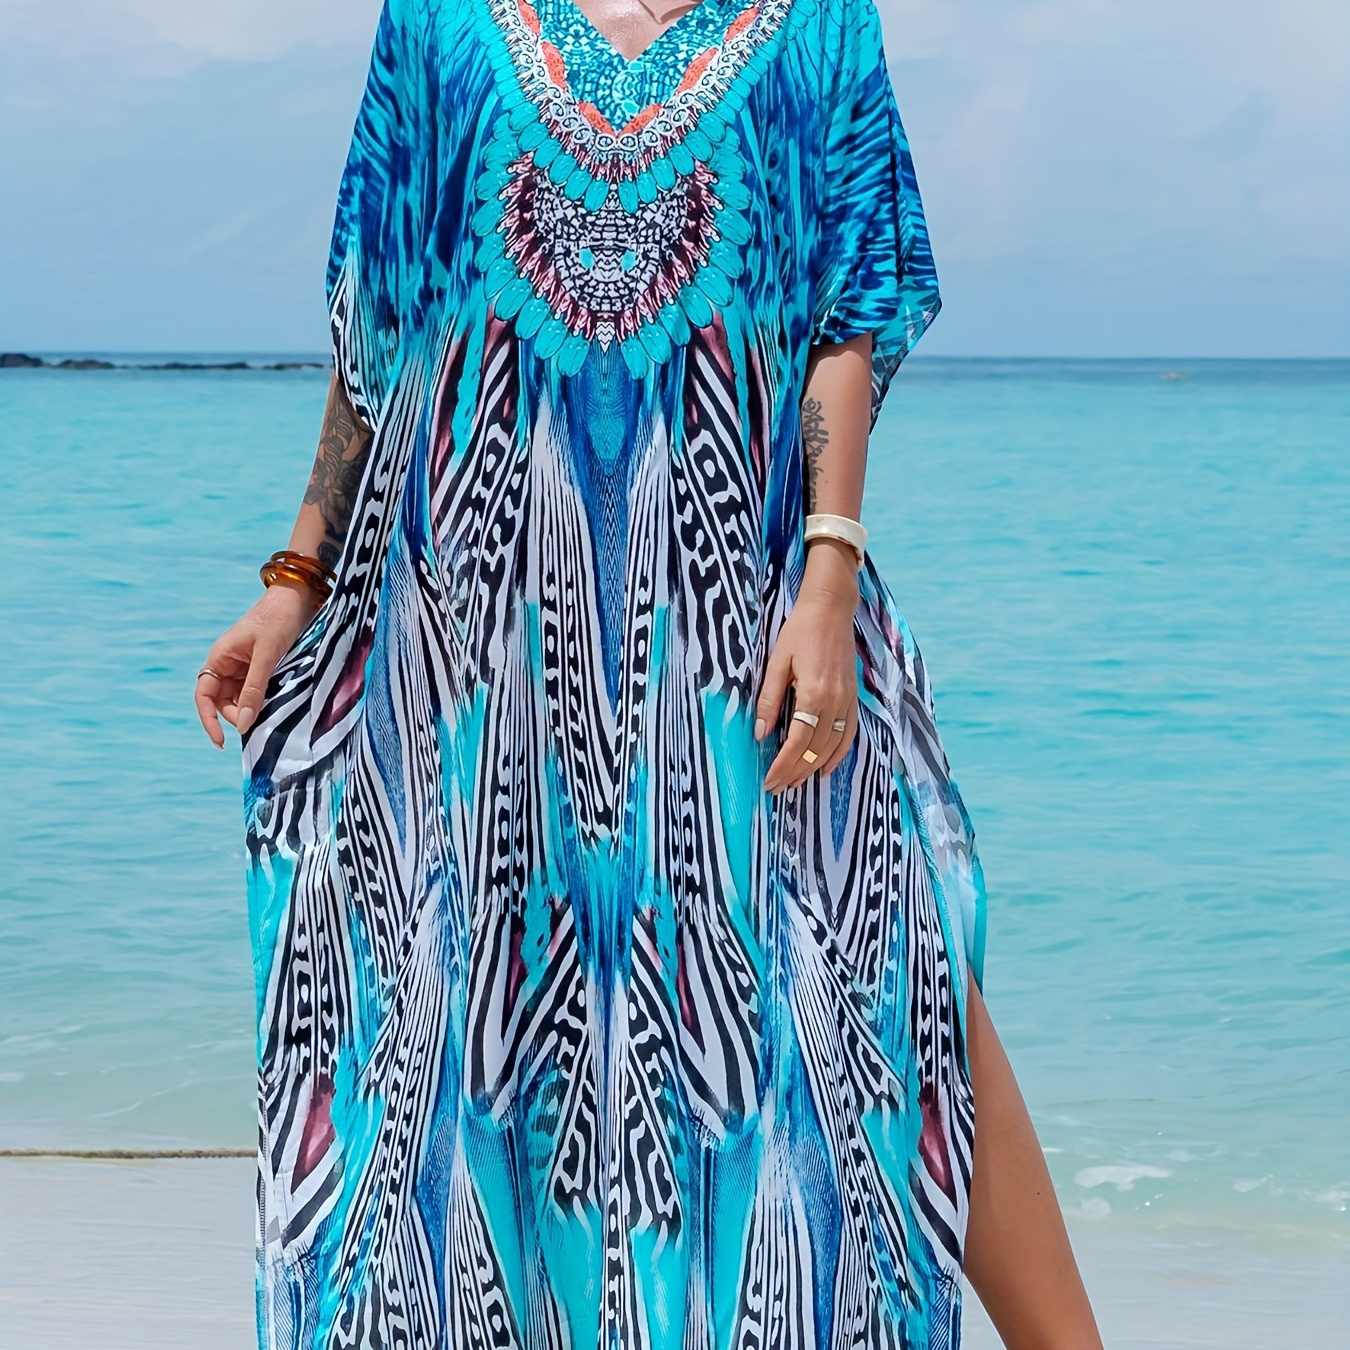 

Blue Allover Print Side Split Cover Up Dress, Loose Fur V Neck Short Sleeve Beach Kaftan, Women's Swimwear & Clothing For Holiday